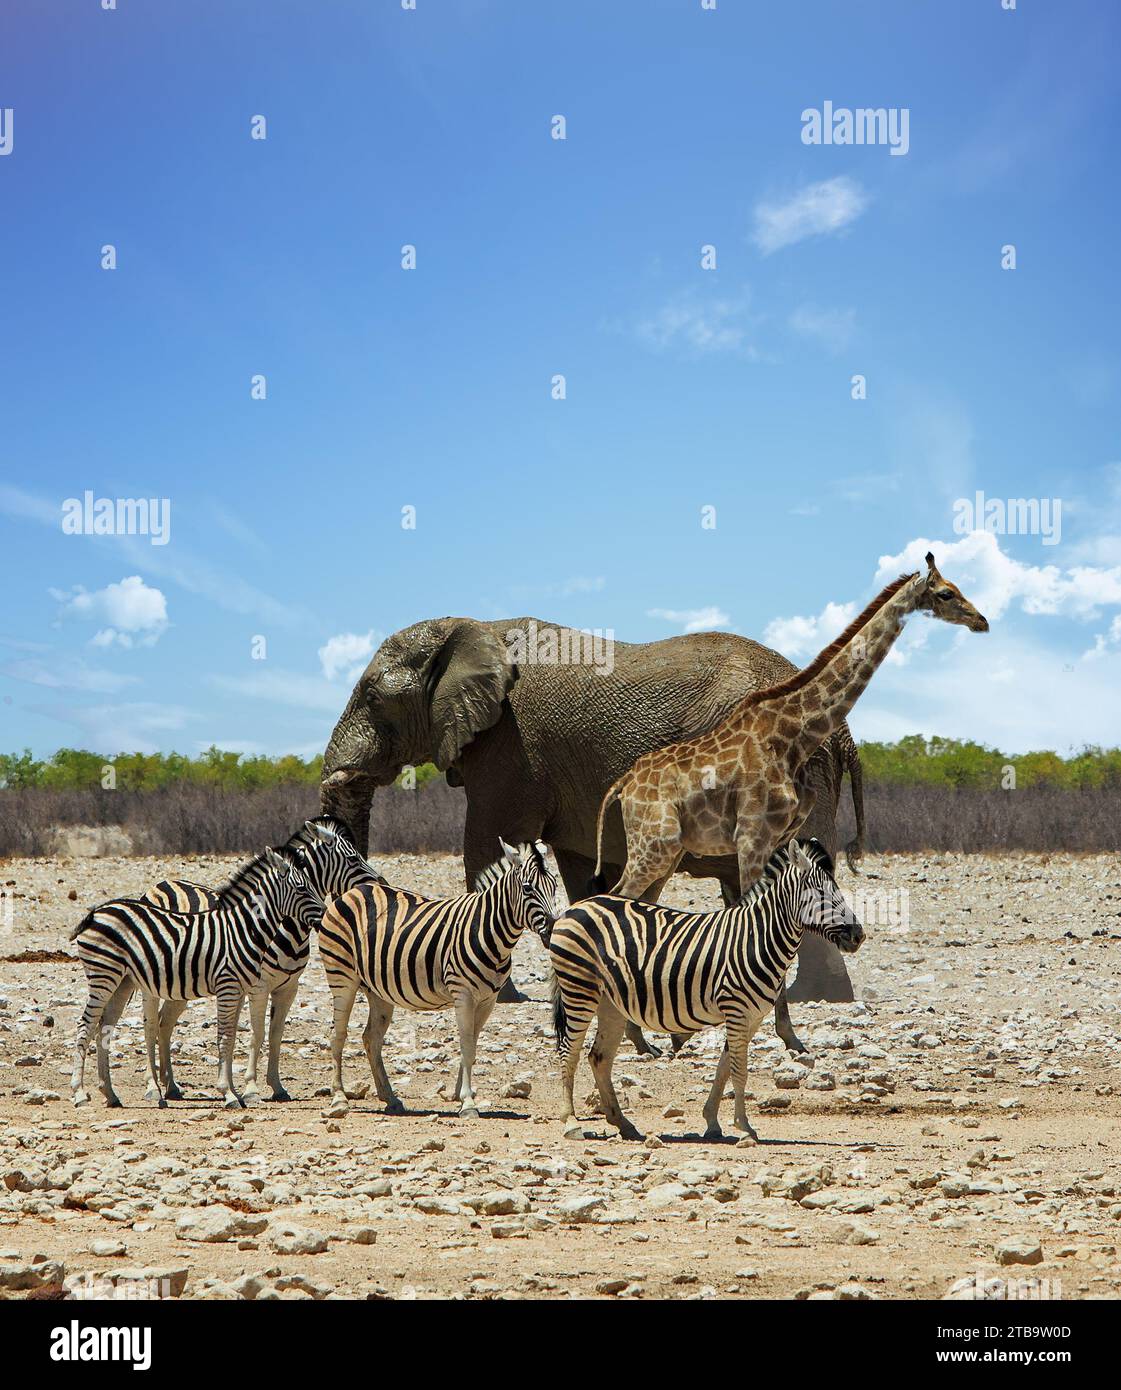 Portraitansicht eines Elefanten, einer Zebraherde und einer Giraffe, die zusammen auf der afrikanischen Savanne stehen Stockfoto